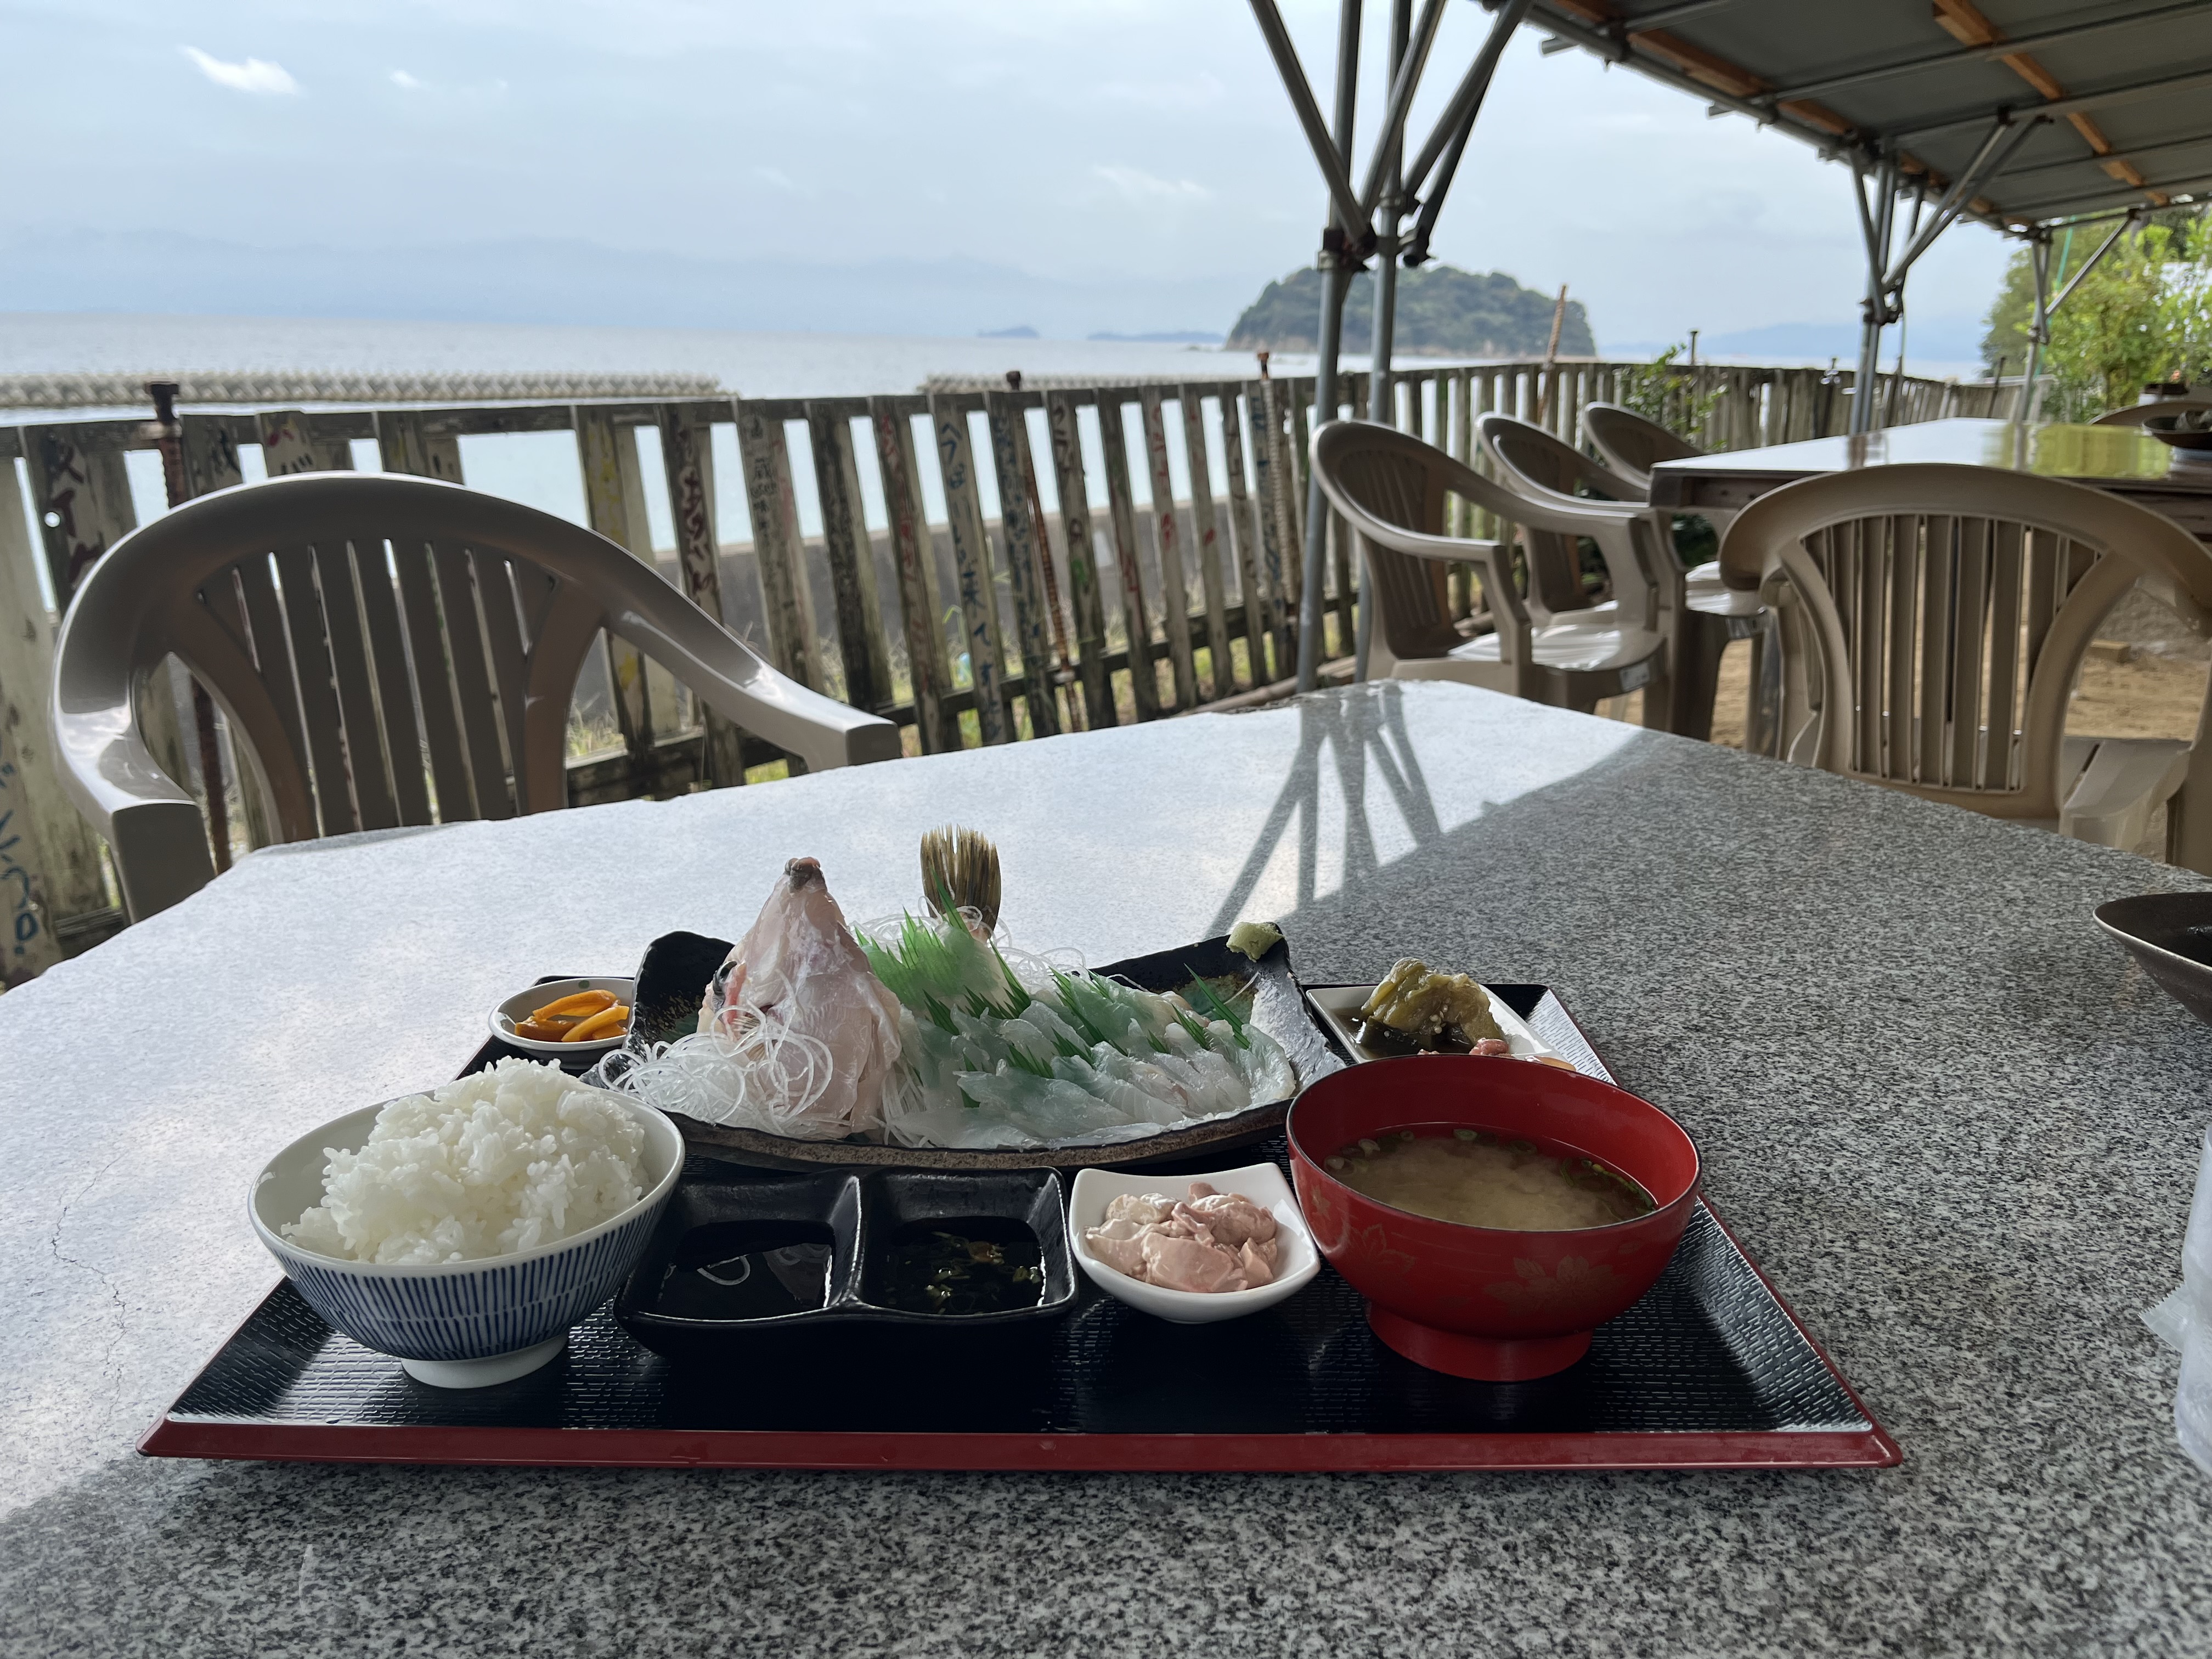 【大島】海の家魚蔵の刺身定食と外の景色